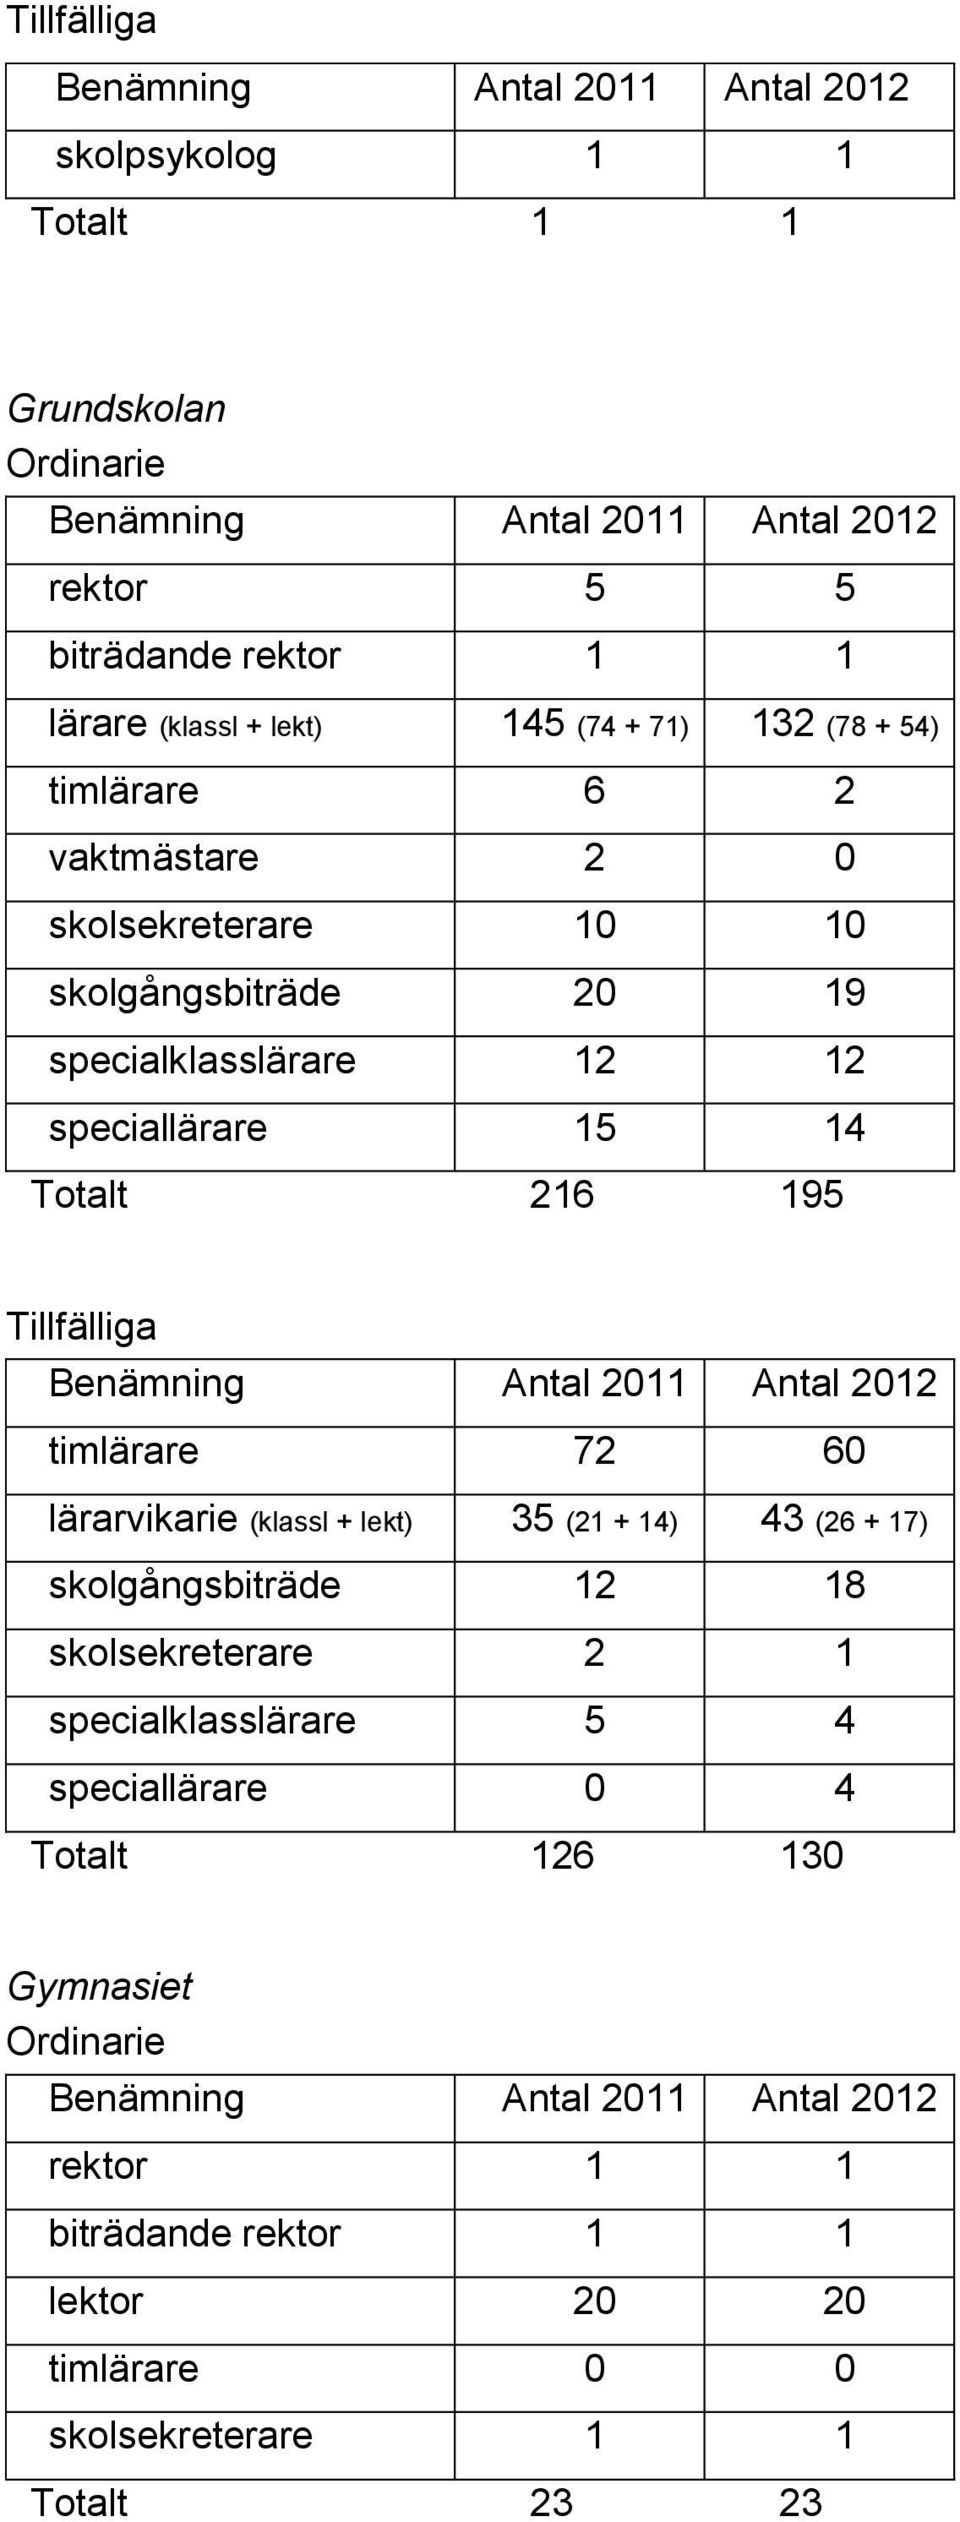 Tillfälliga Benämning Antal 2011 Antal 2012 timlärare 72 60 lärarvikarie (klassl + lekt) 35 (21 + 14) 43 (26 + 17) skolgångsbiträde 12 18 skolsekreterare 2 1